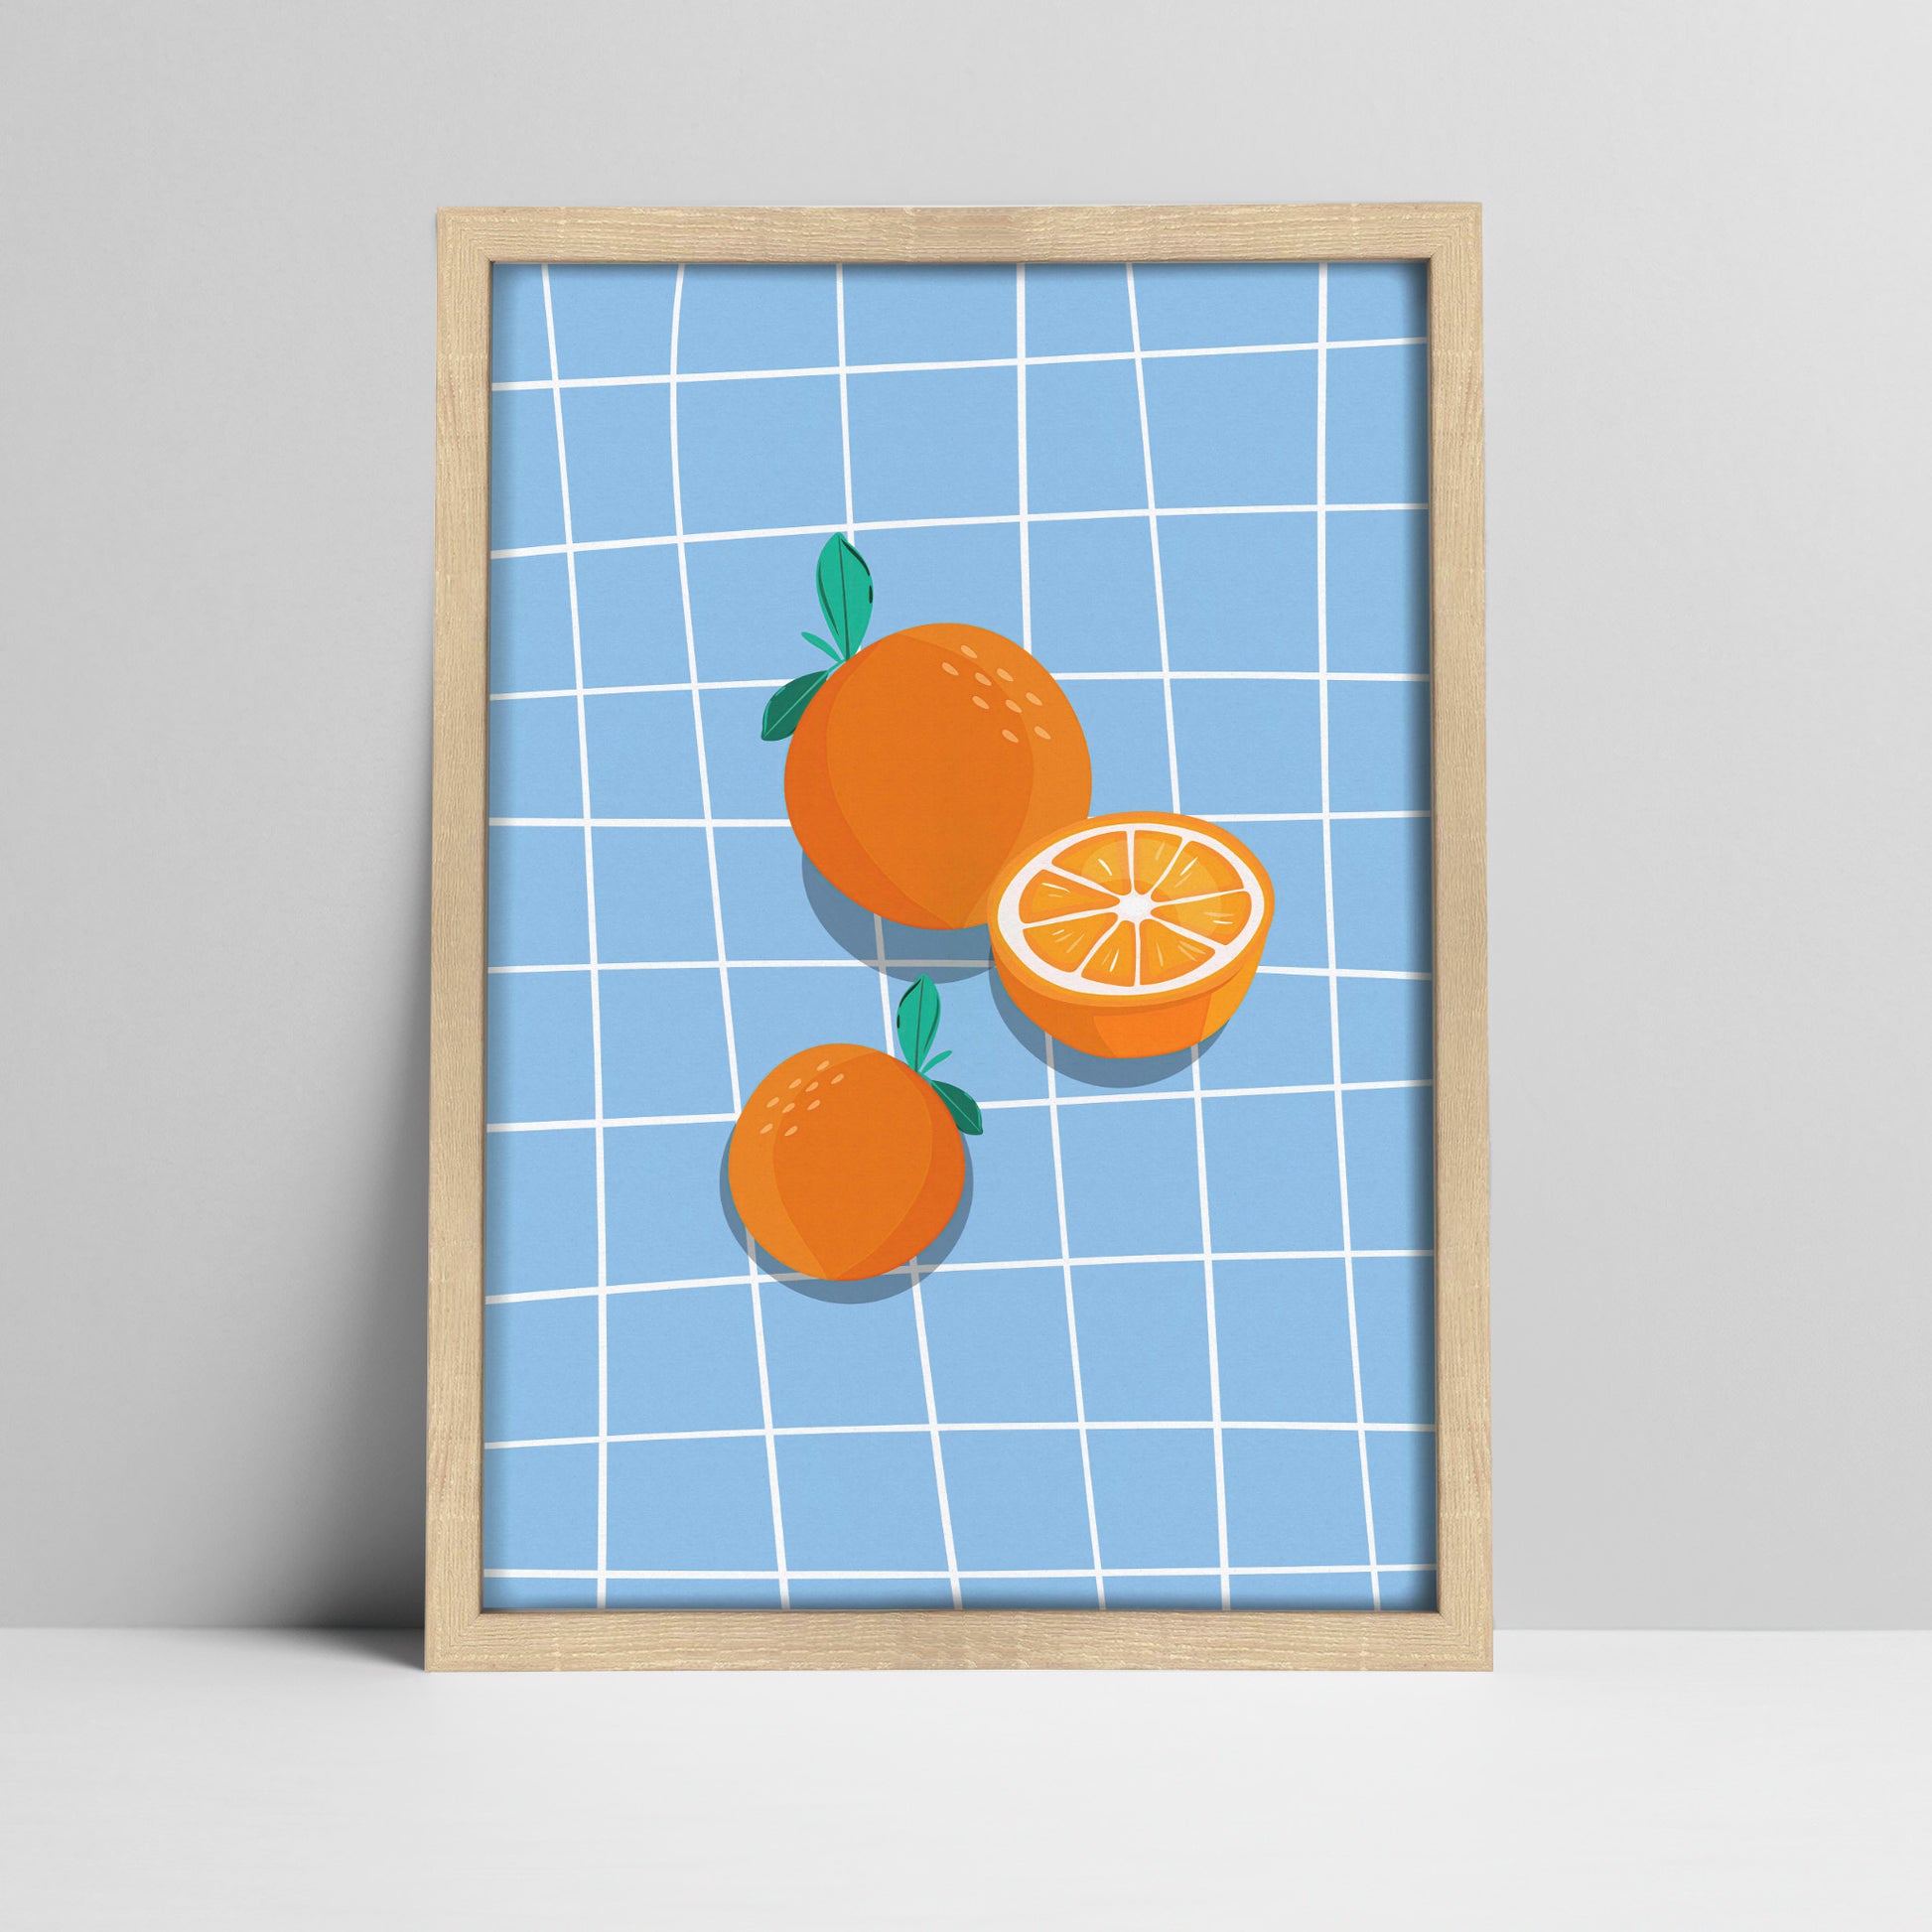 Art print of oranges on blue grid background illustration in a light wood frame